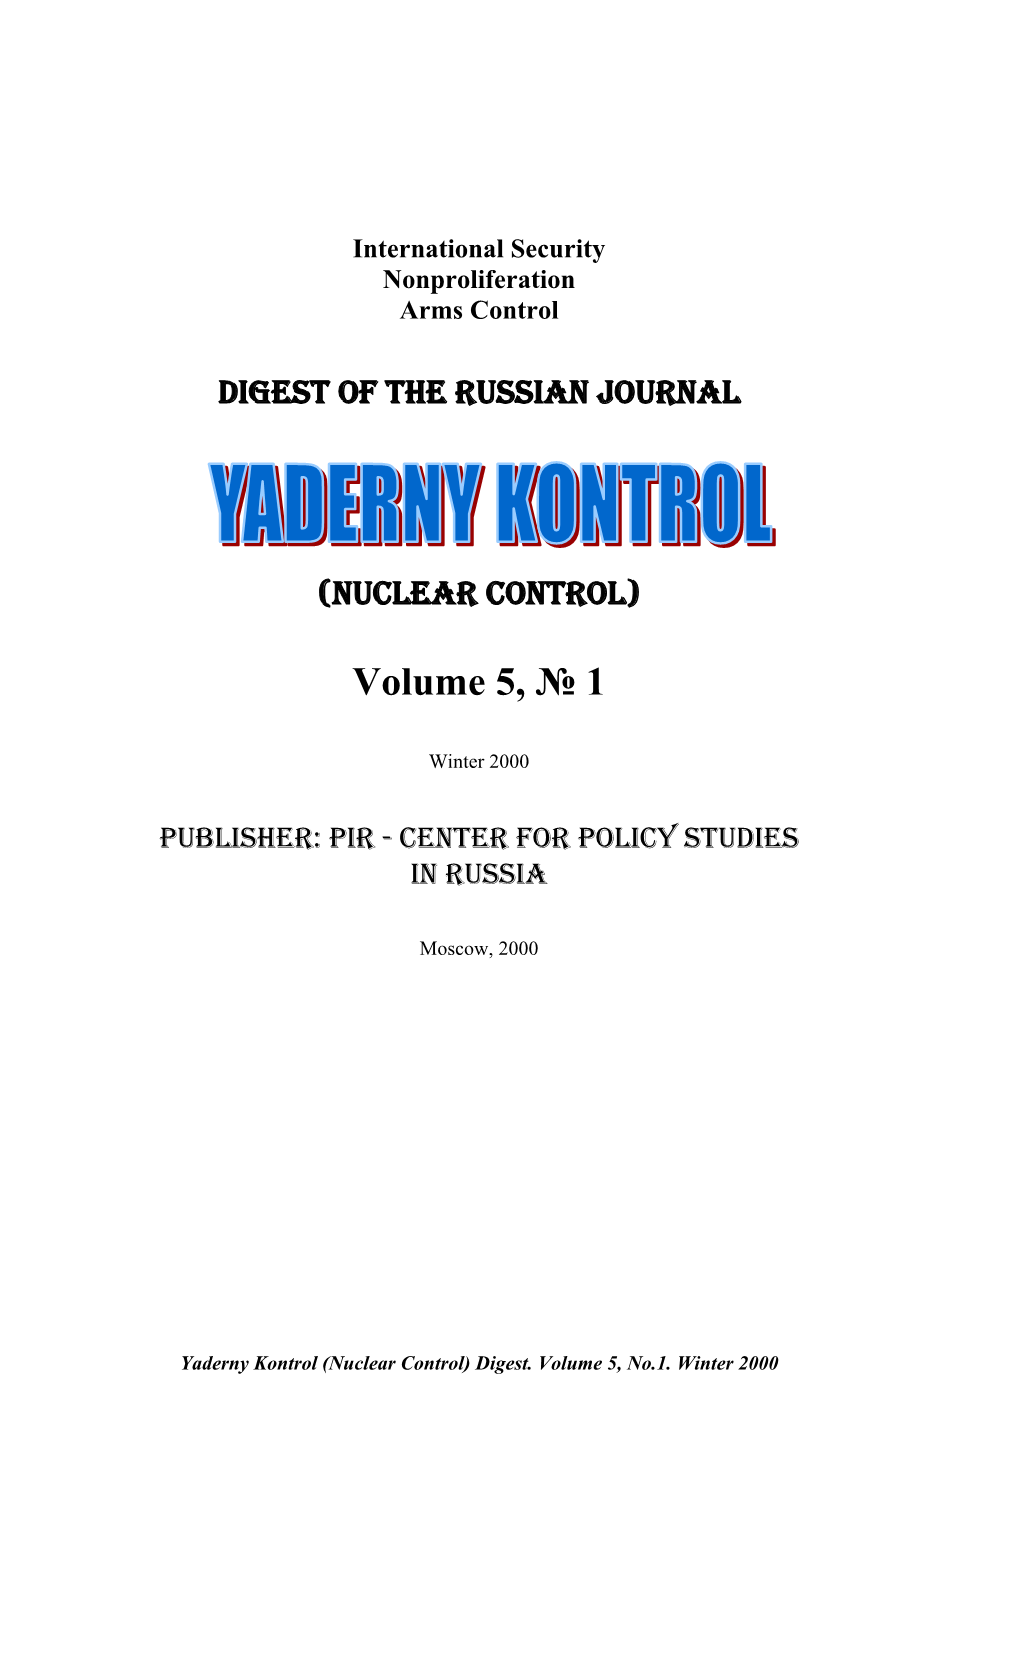 Yaderny Kontrol (Nuclear Control) Digest